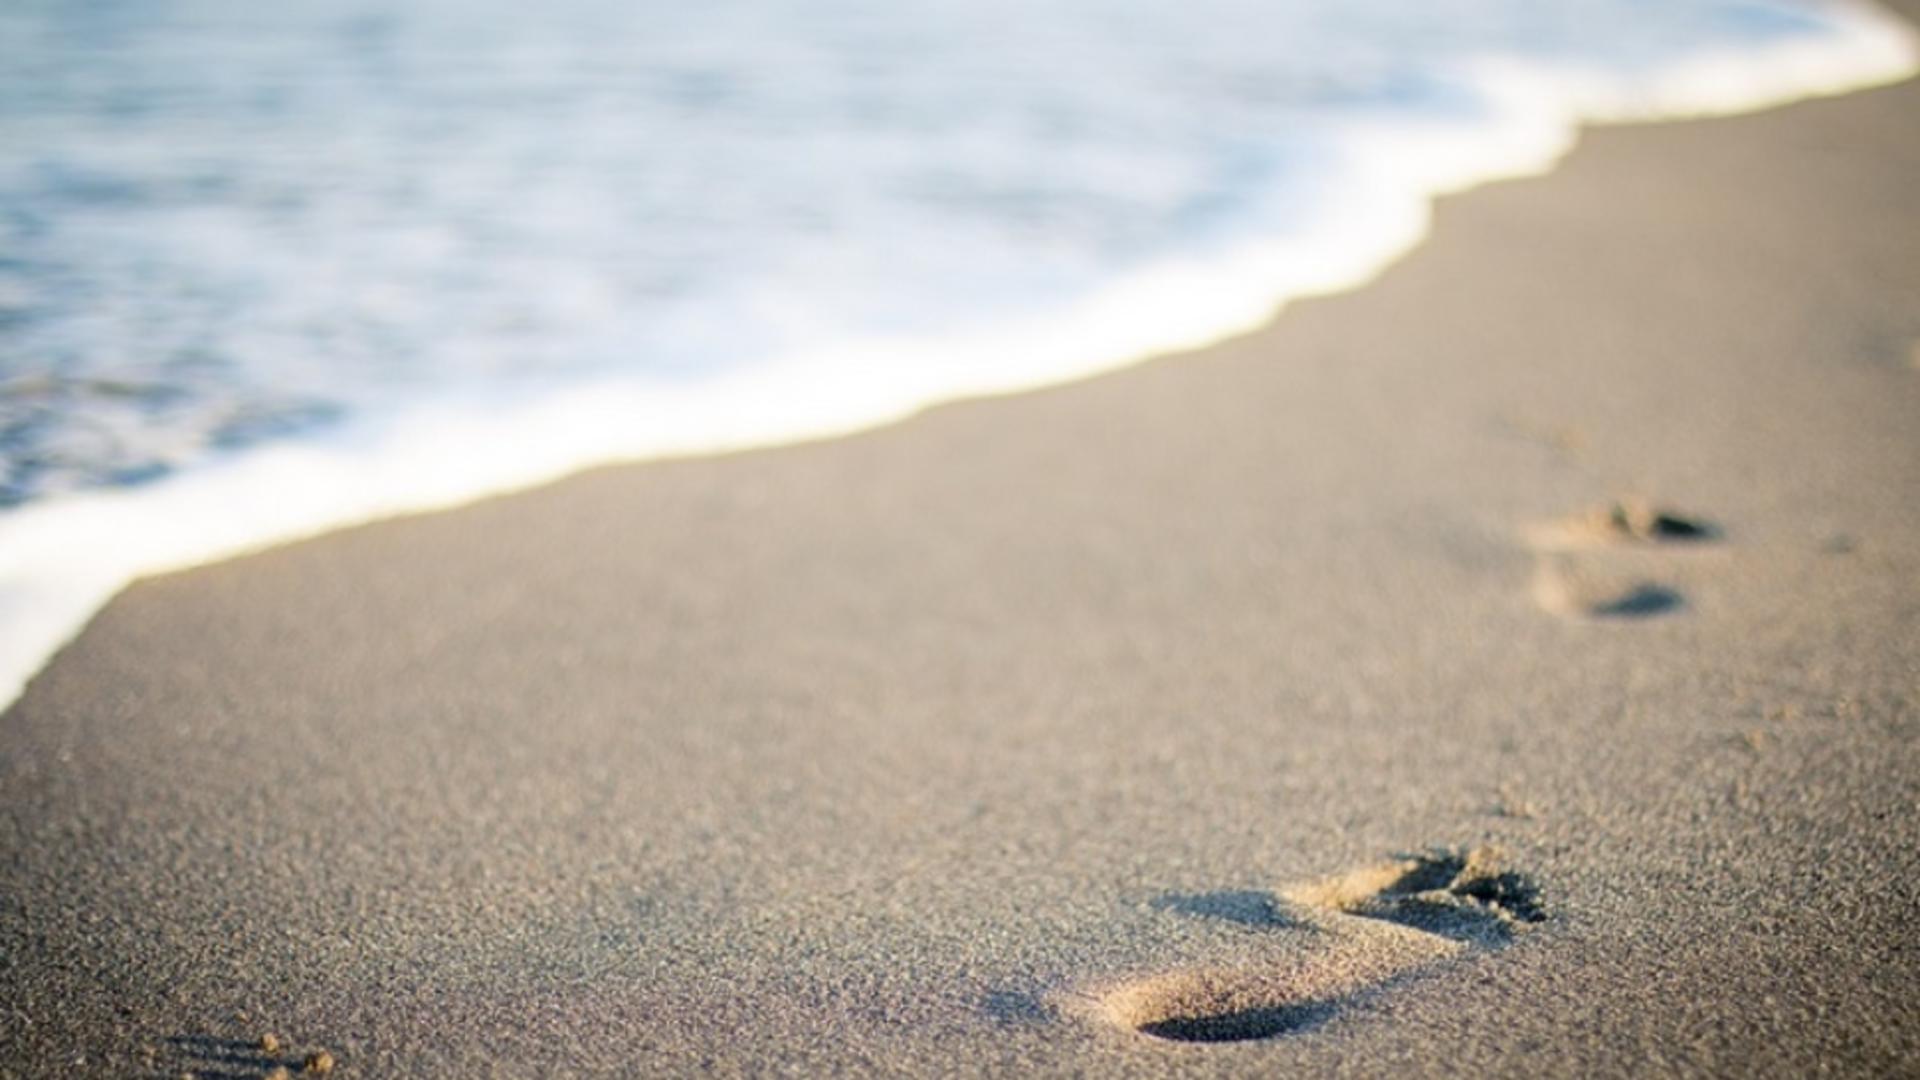 Pachet cu o substanță albă, găsit pe o plajă din Constanța: înăuntru ar putea fi droguri